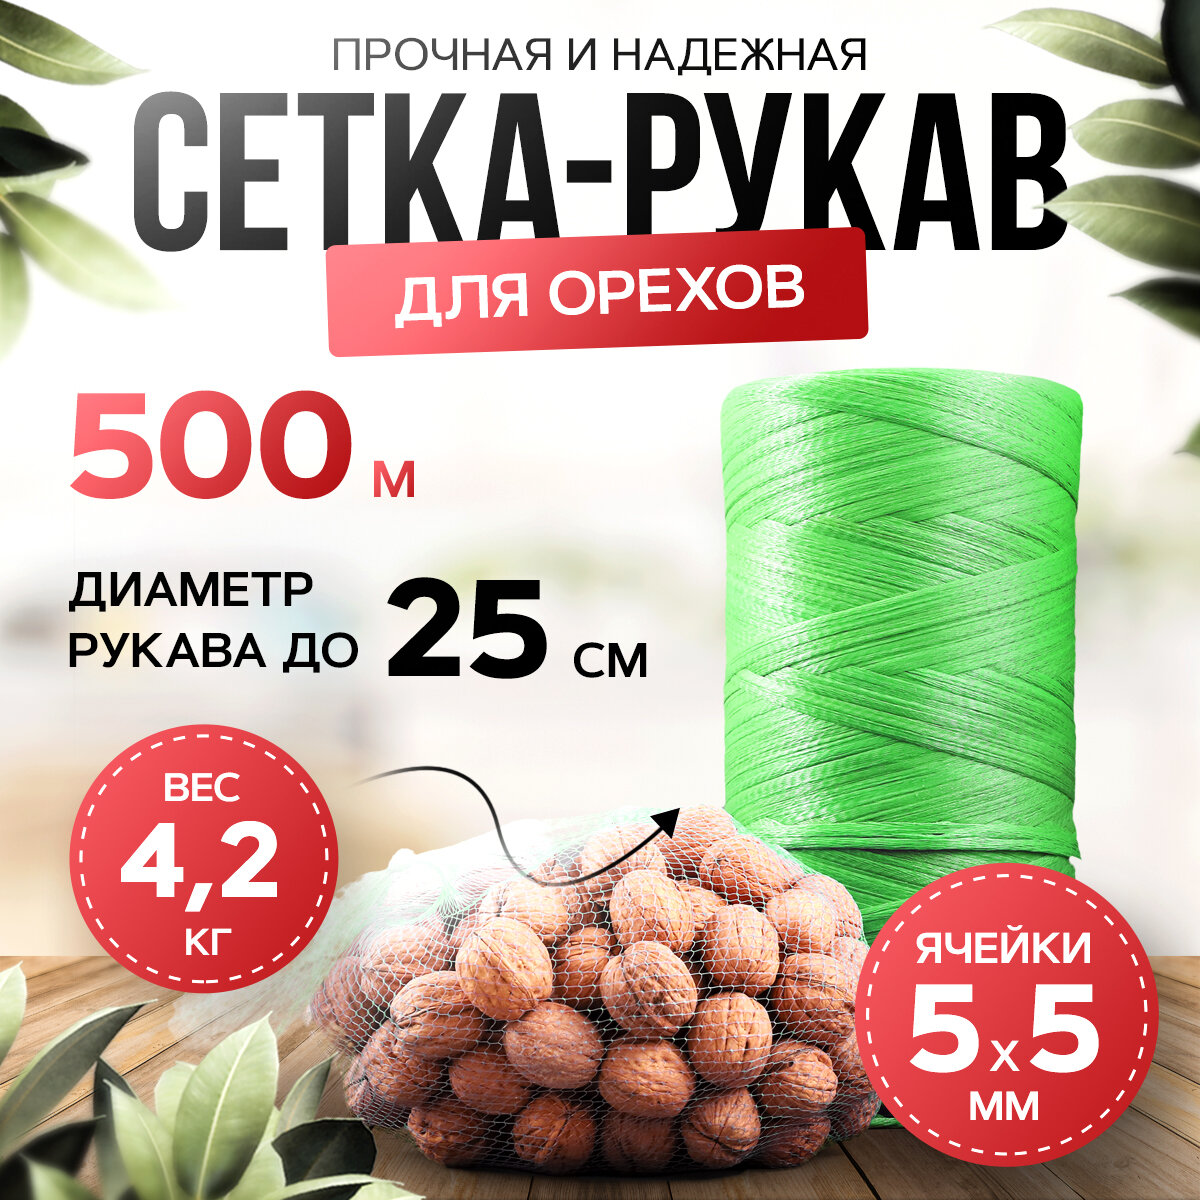 Упаковочная сетка для орехов в рулоне 500 метров, зеленая